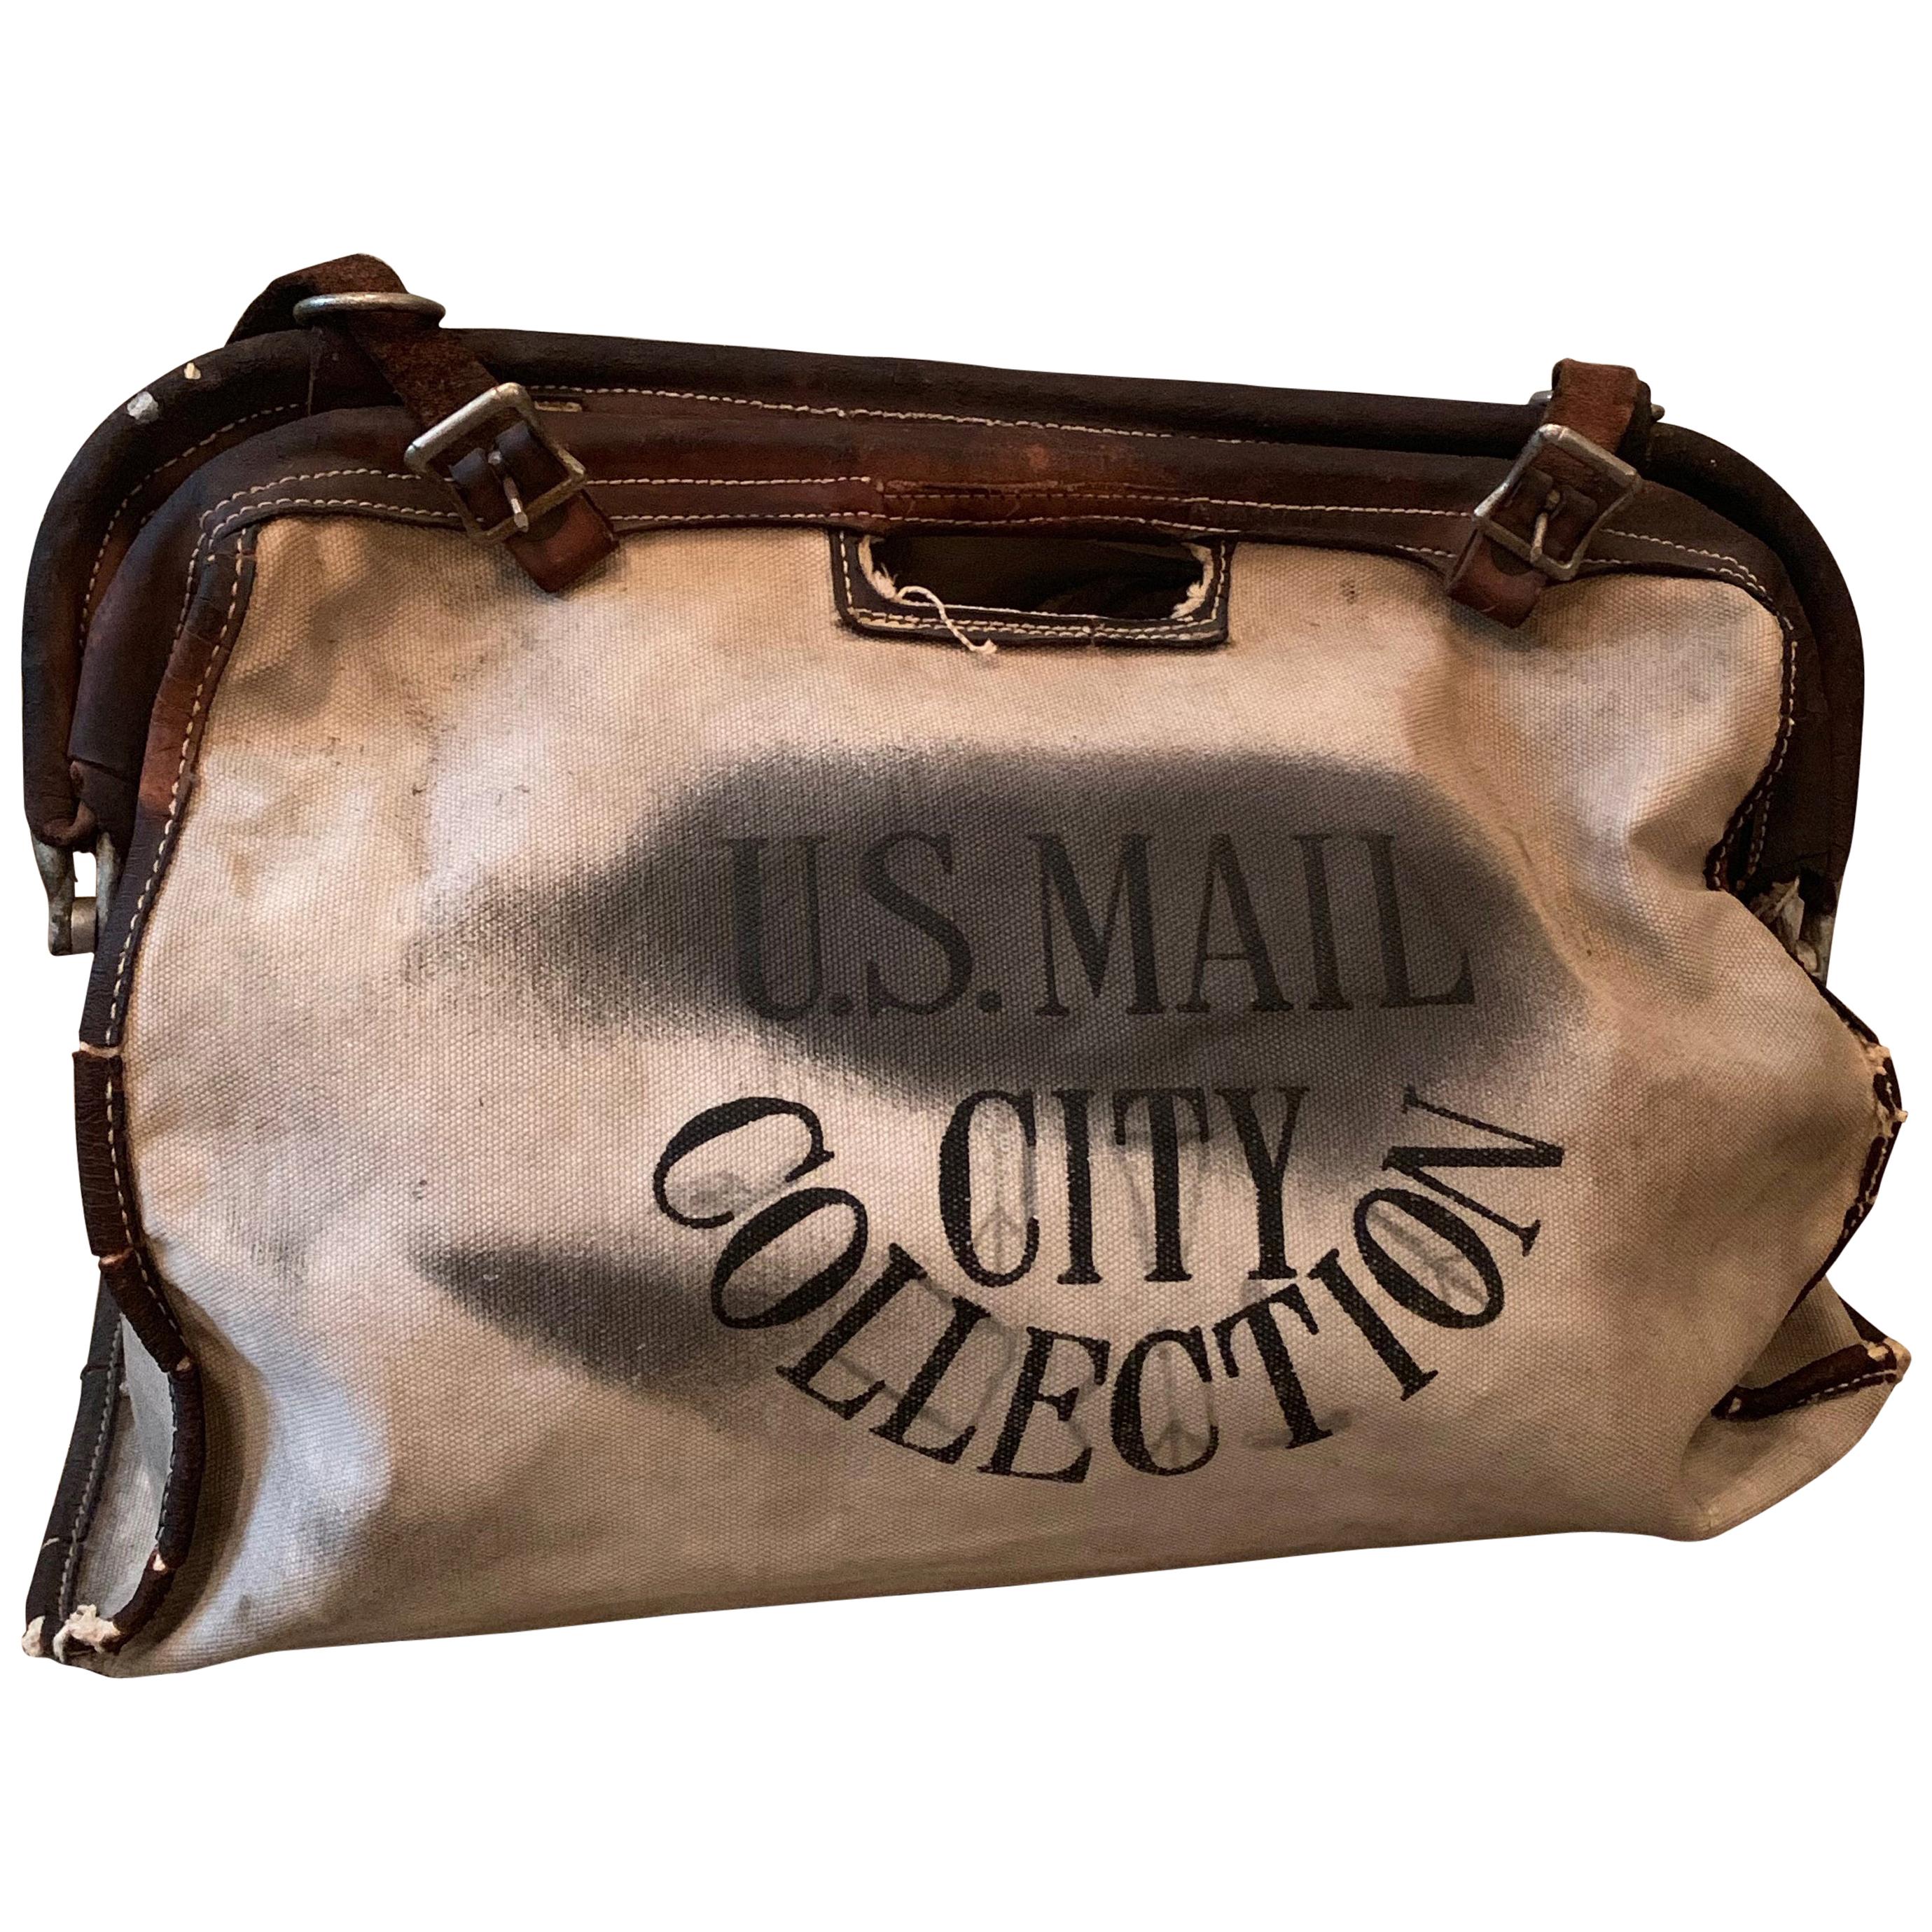 Postman U.S. Mail Delivery Bag aus Segeltuch und Leder